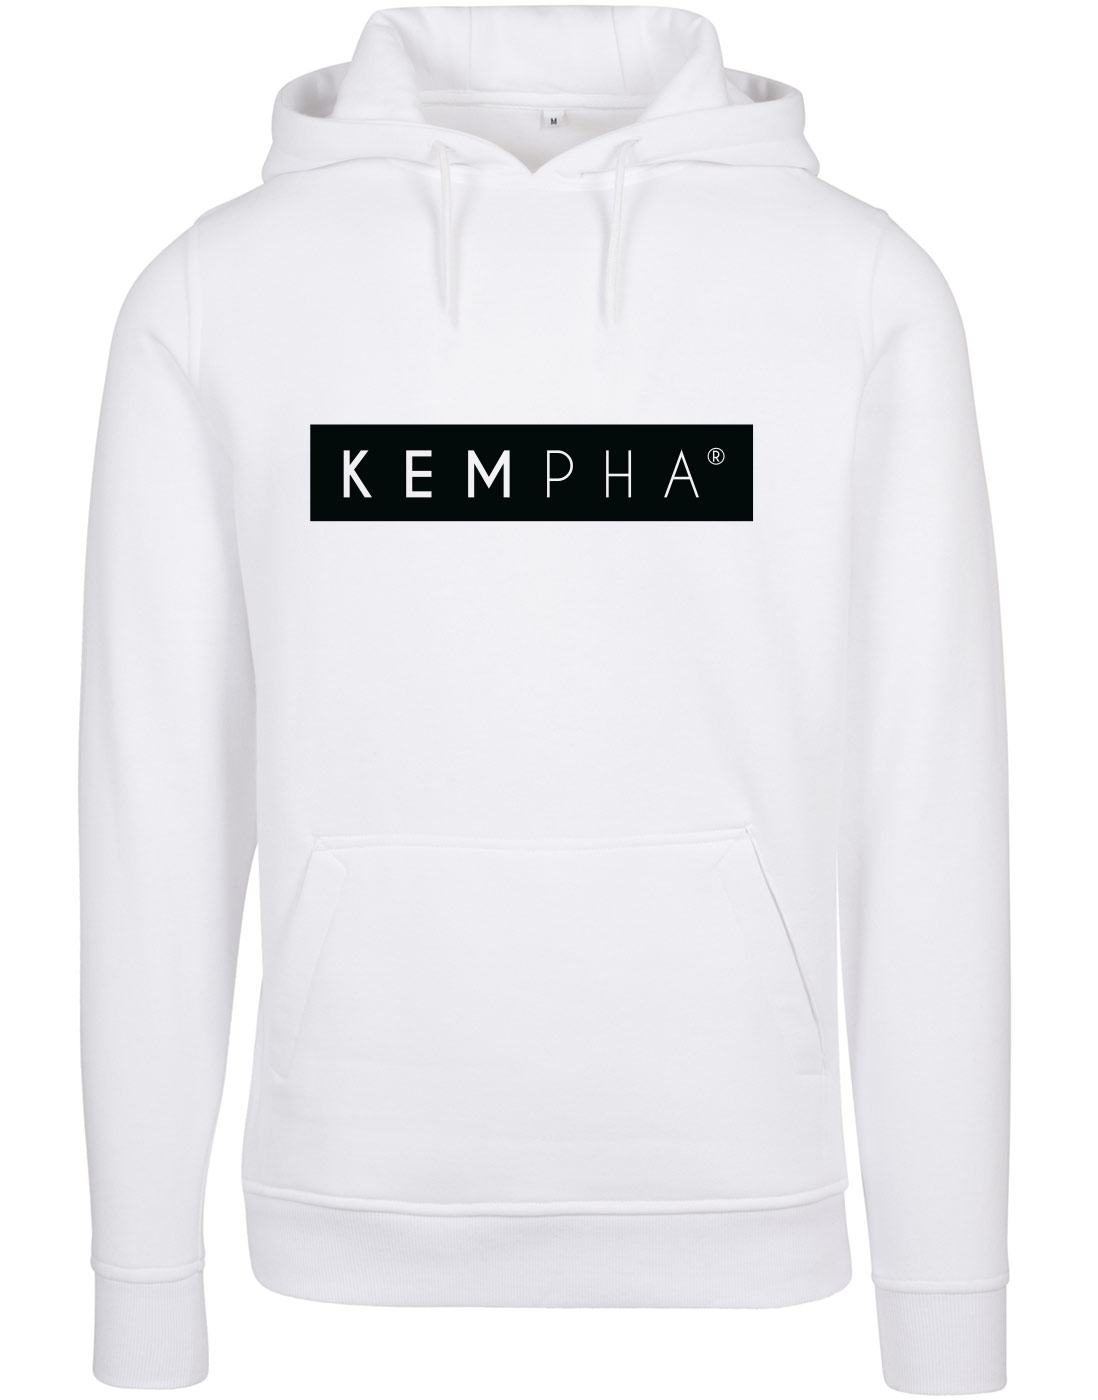 Kempha Premium Hoodie weiss